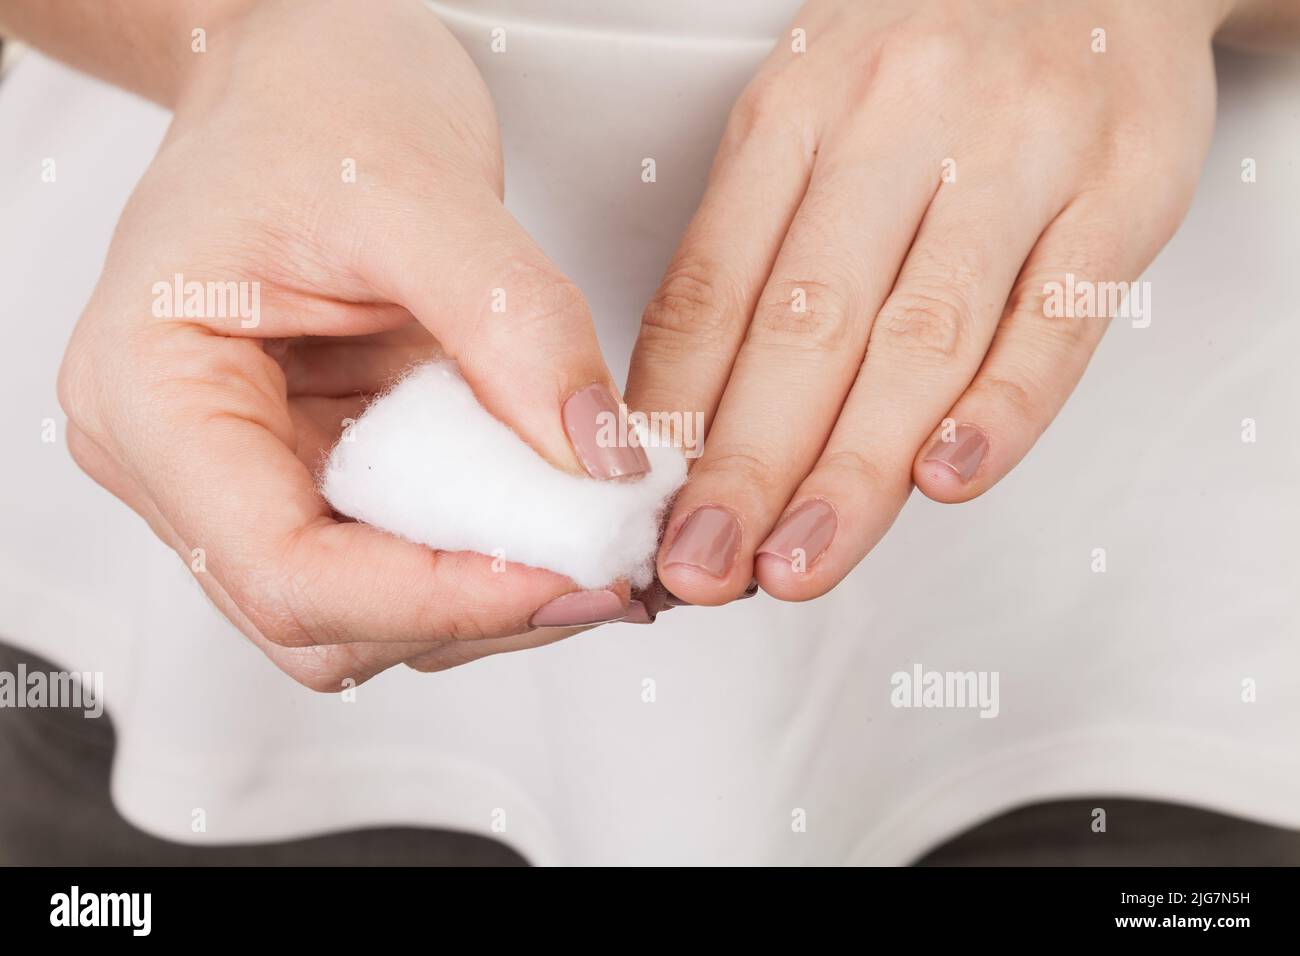 Nagelpflege, Frau wischte ihre Nägel mit Baumwolle. Stockfoto